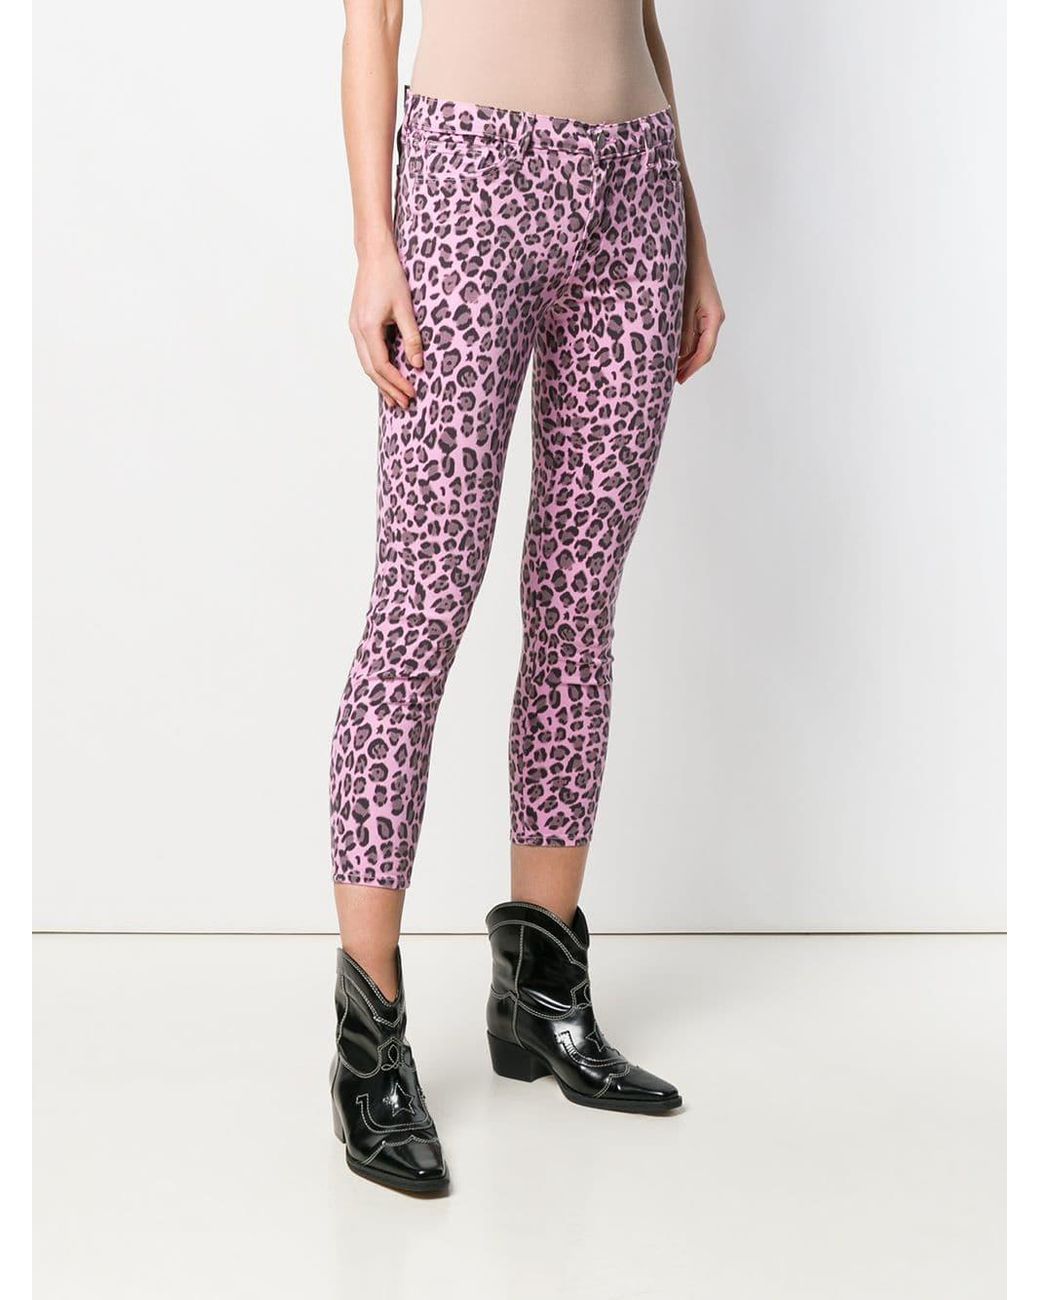 j brand leopard print jeans